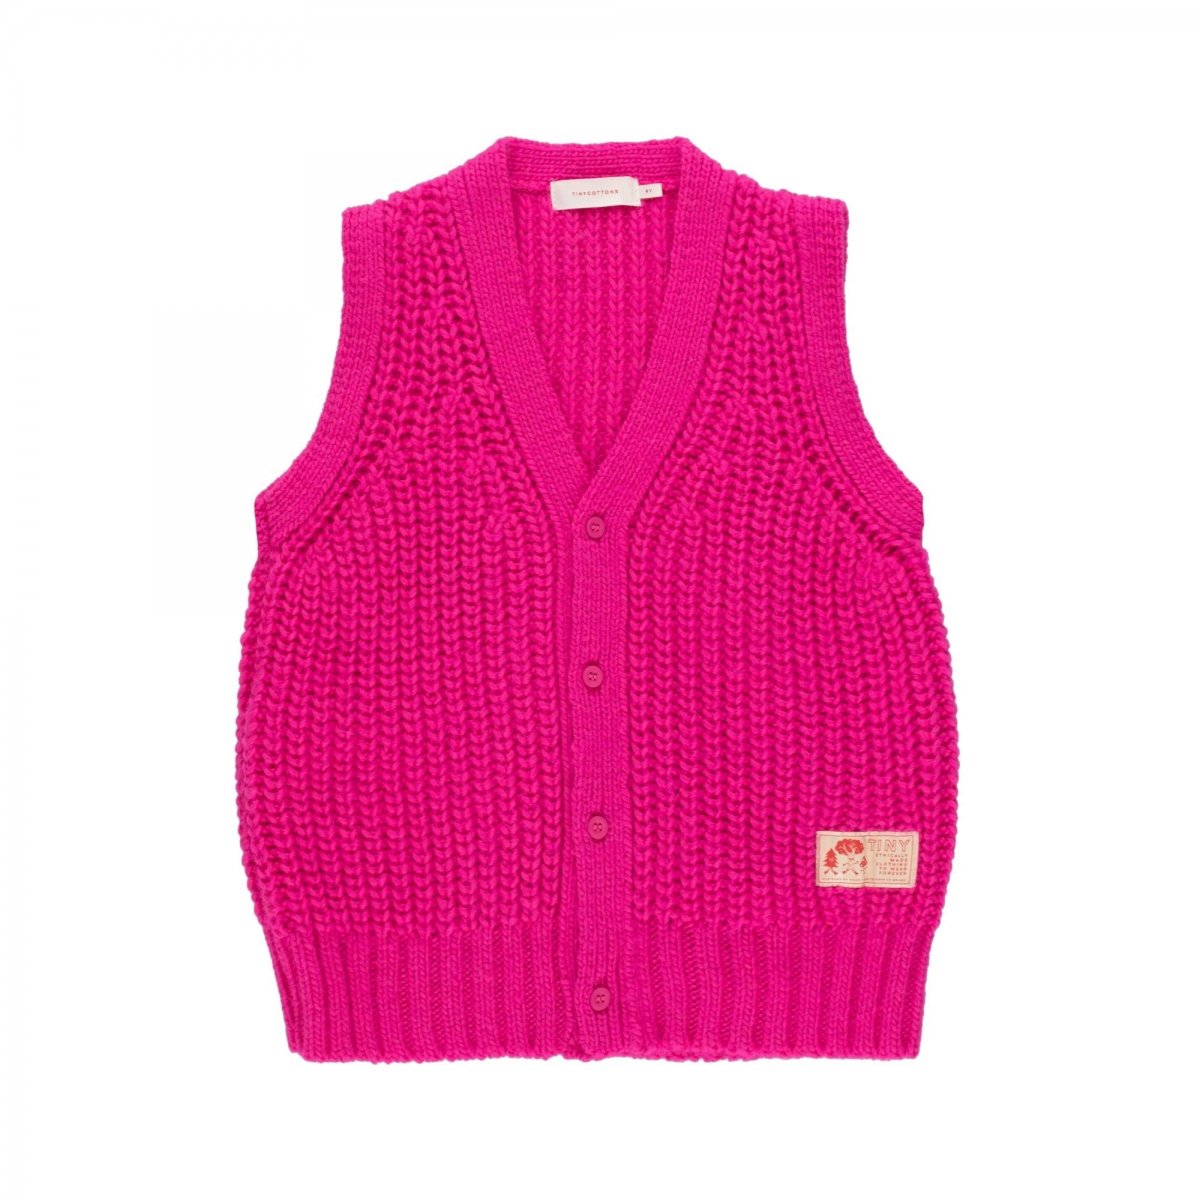 Tiny Cottons Kamizelka Vest różowa AW21-205-D12 